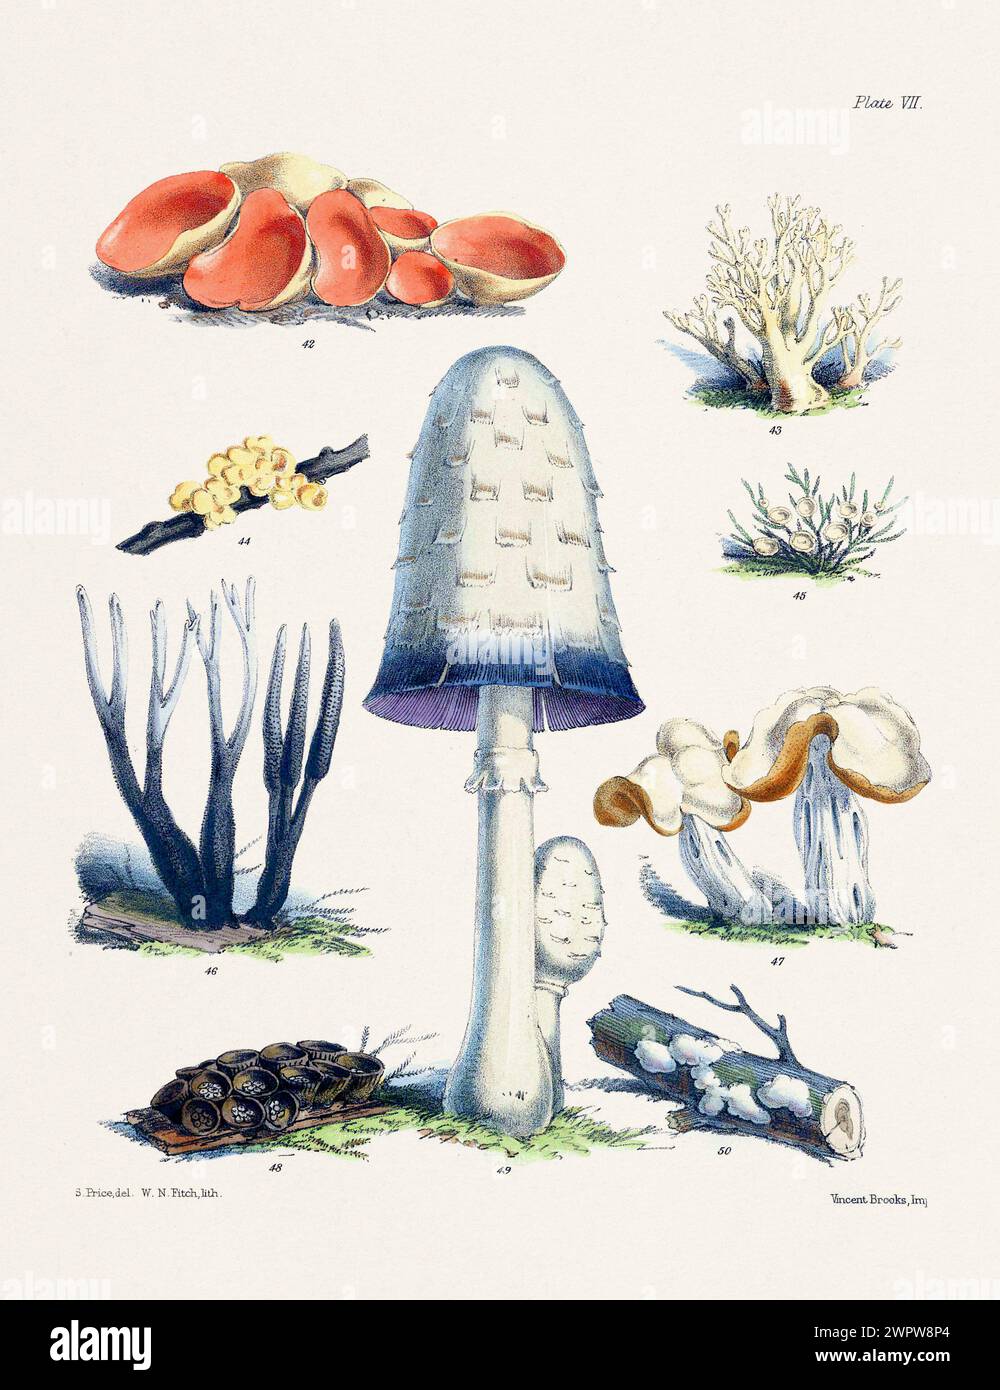 Vintage Mushroom illustration : champignons botaniques Art. 42. PEZIZA AURANTIA. 43. CLAYARIA RUGOSA. 44. TREMELLA LUTESCENS. 45. CYPHELLA MUSCIGENA. 46. XYLA Banque D'Images